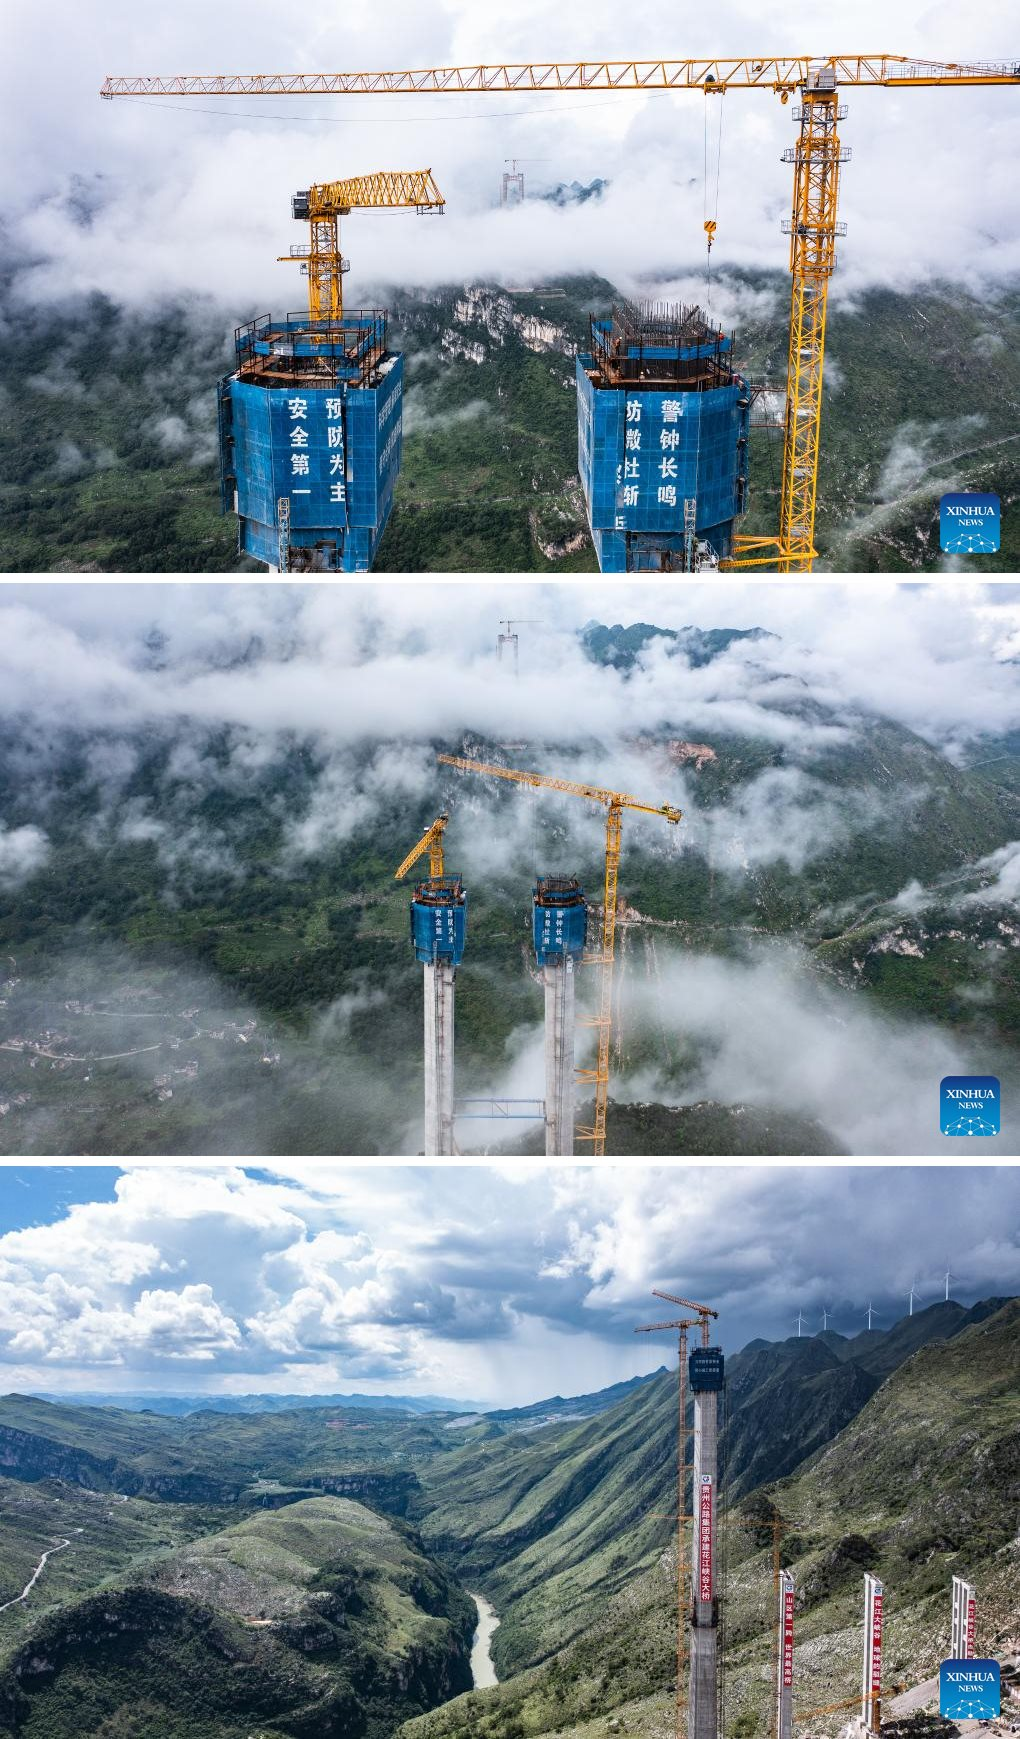 Trung Quốc sắp hoàn thiện cầu xuyên núi cao nhất thế giới: Nằm lơ lửng trên mây ở độ cao hơn 600 m, bắc ngang 2 vách núi cheo leo cực kỳ nguy hiểm - Ảnh 1.